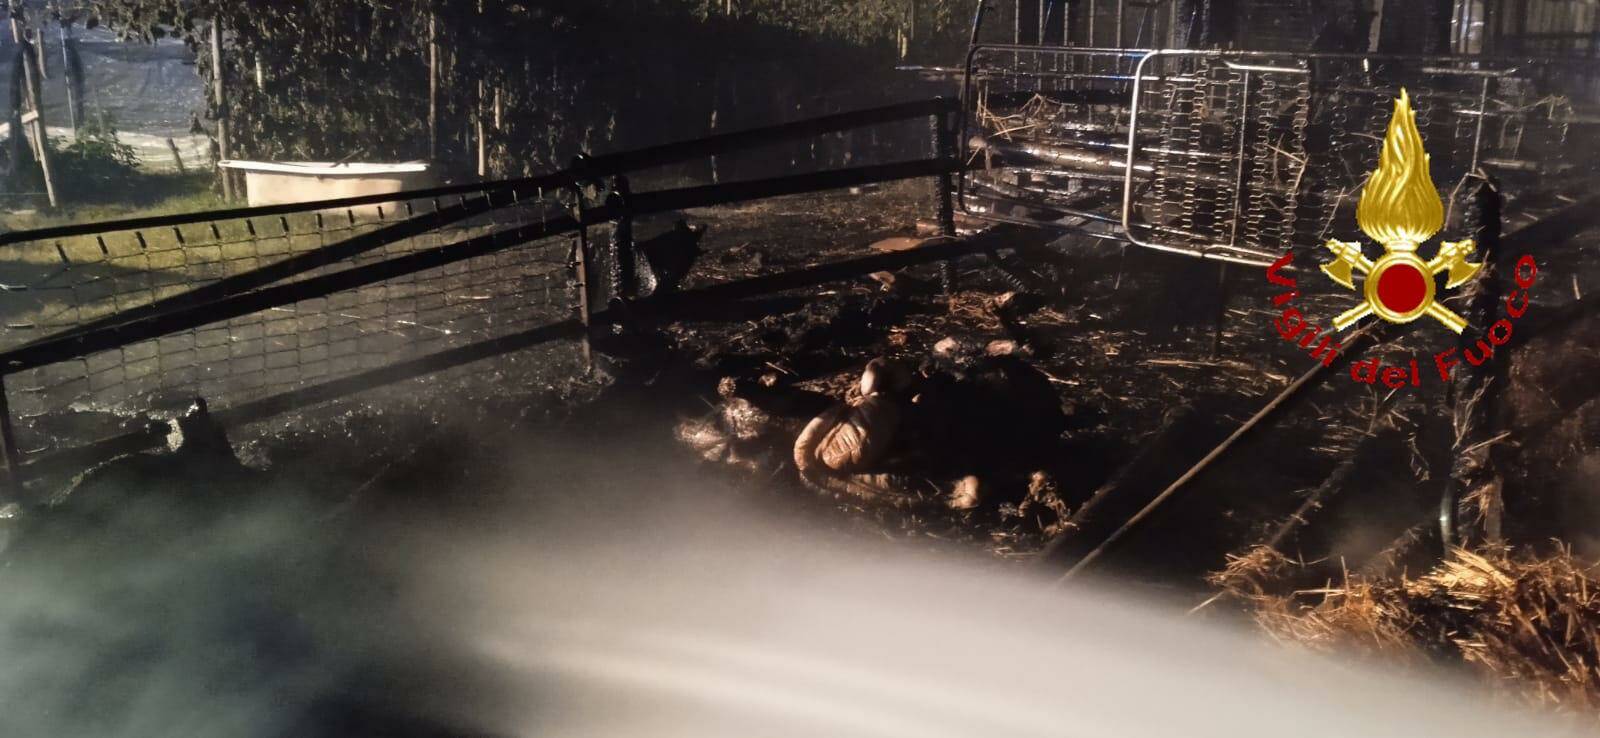 Montalbano Jonico, fiamme intorno a fattoria: morti animali